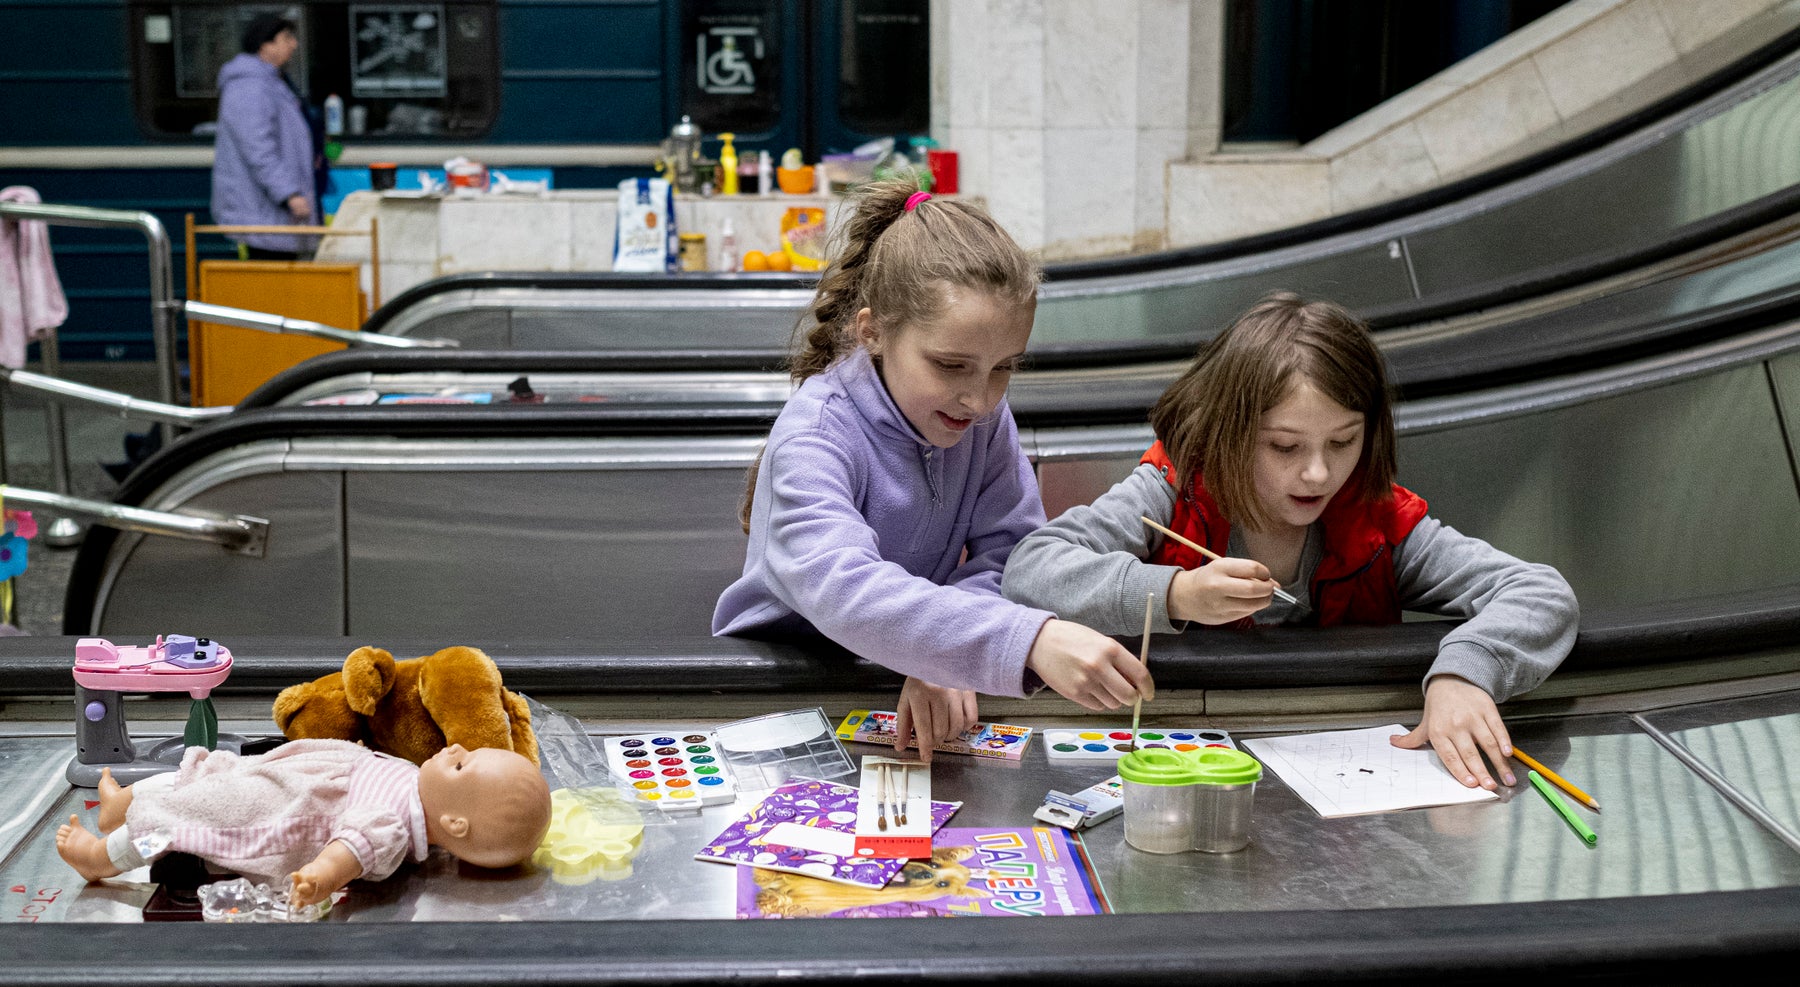 Children playing in underground train station